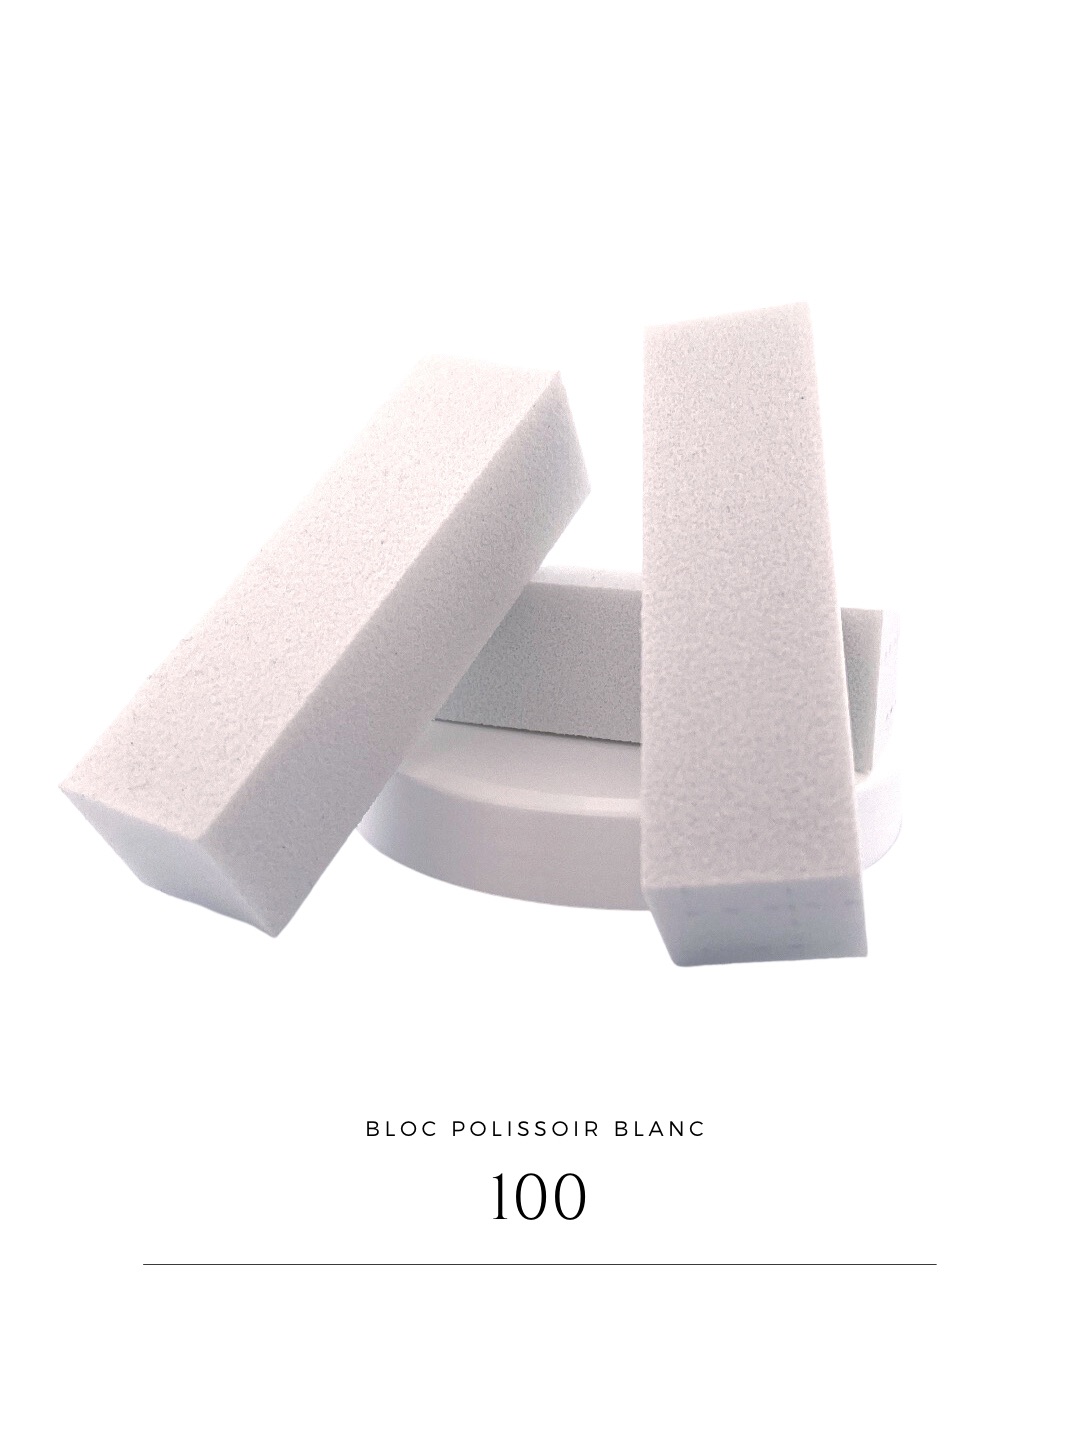 10 Blocs polissoir blanc